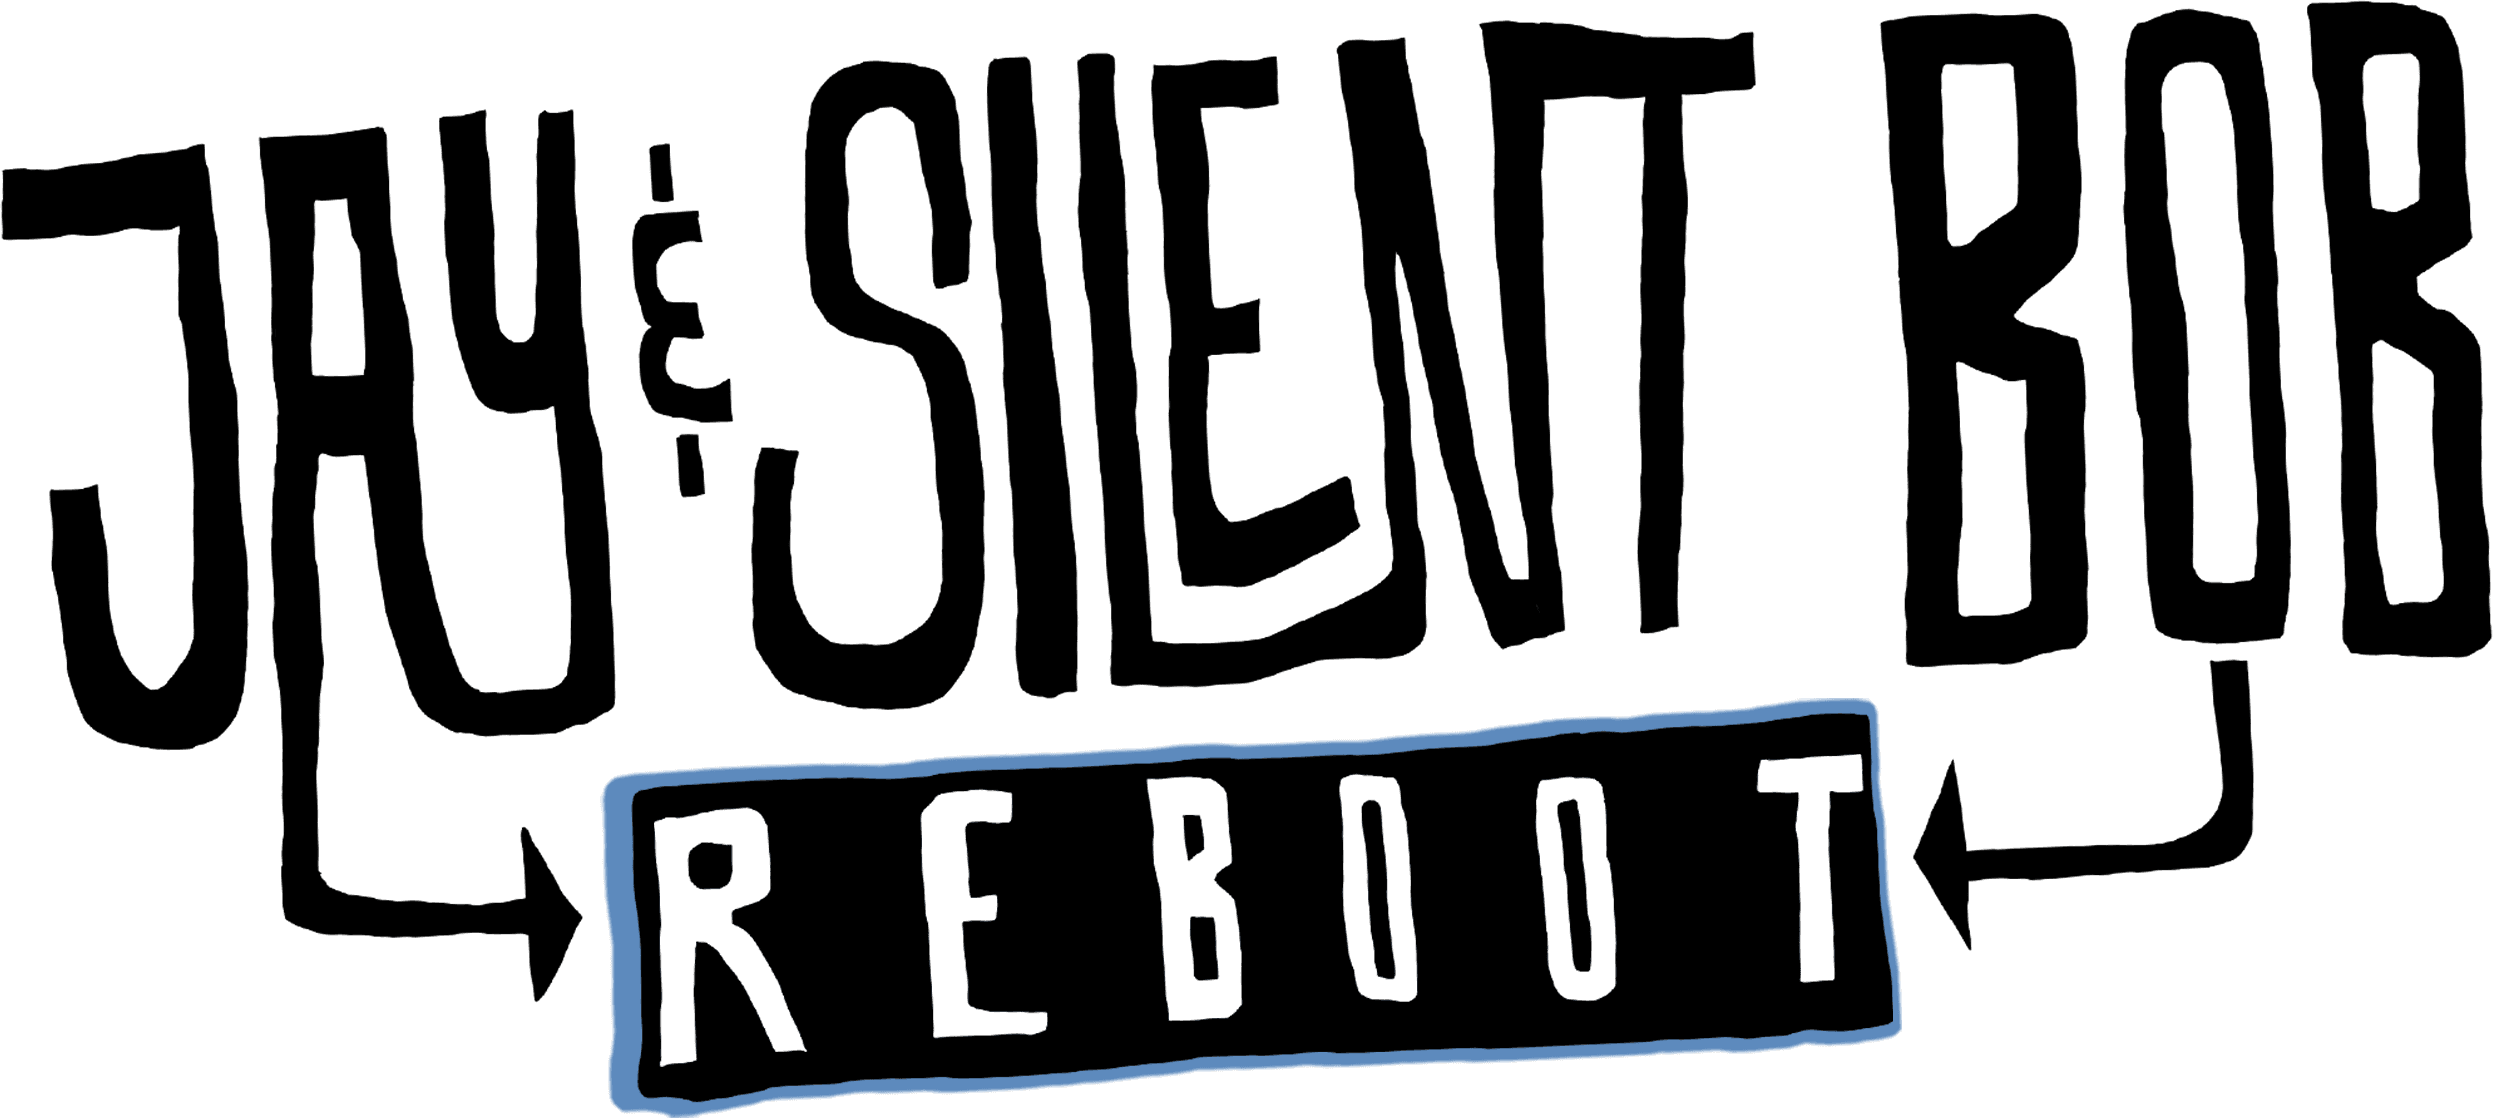 Jay and Silent Bob Reboot logo